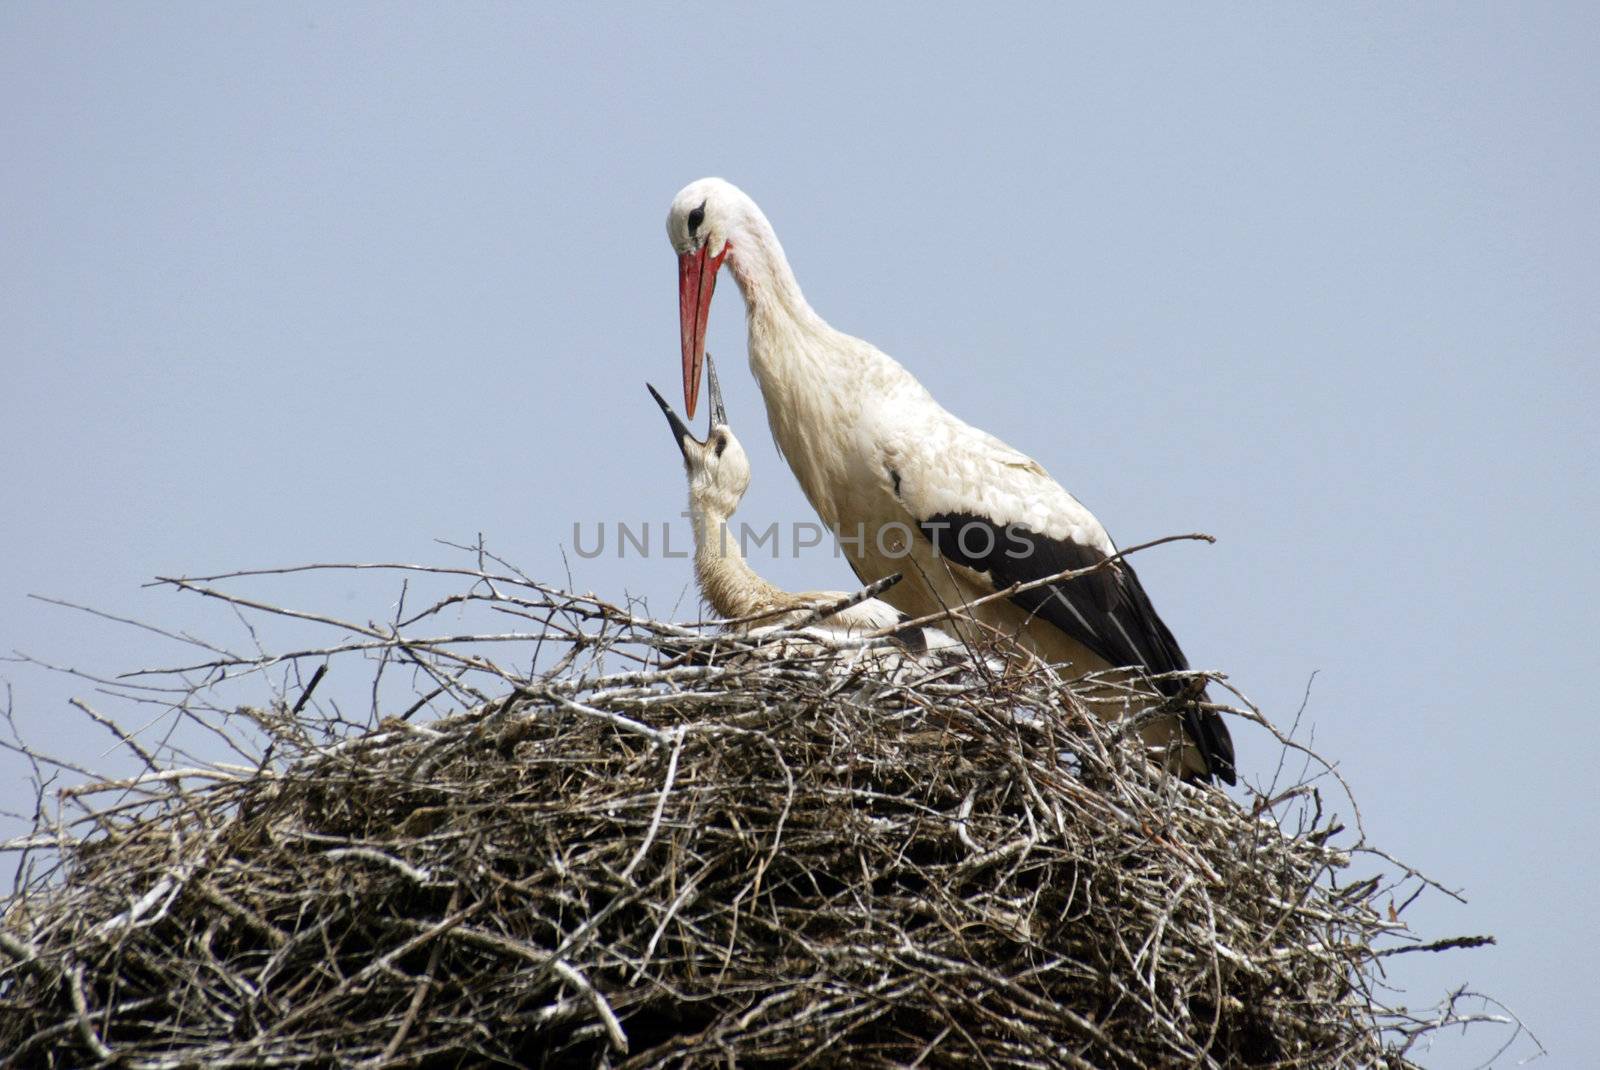 Stork family on the nest by atlas